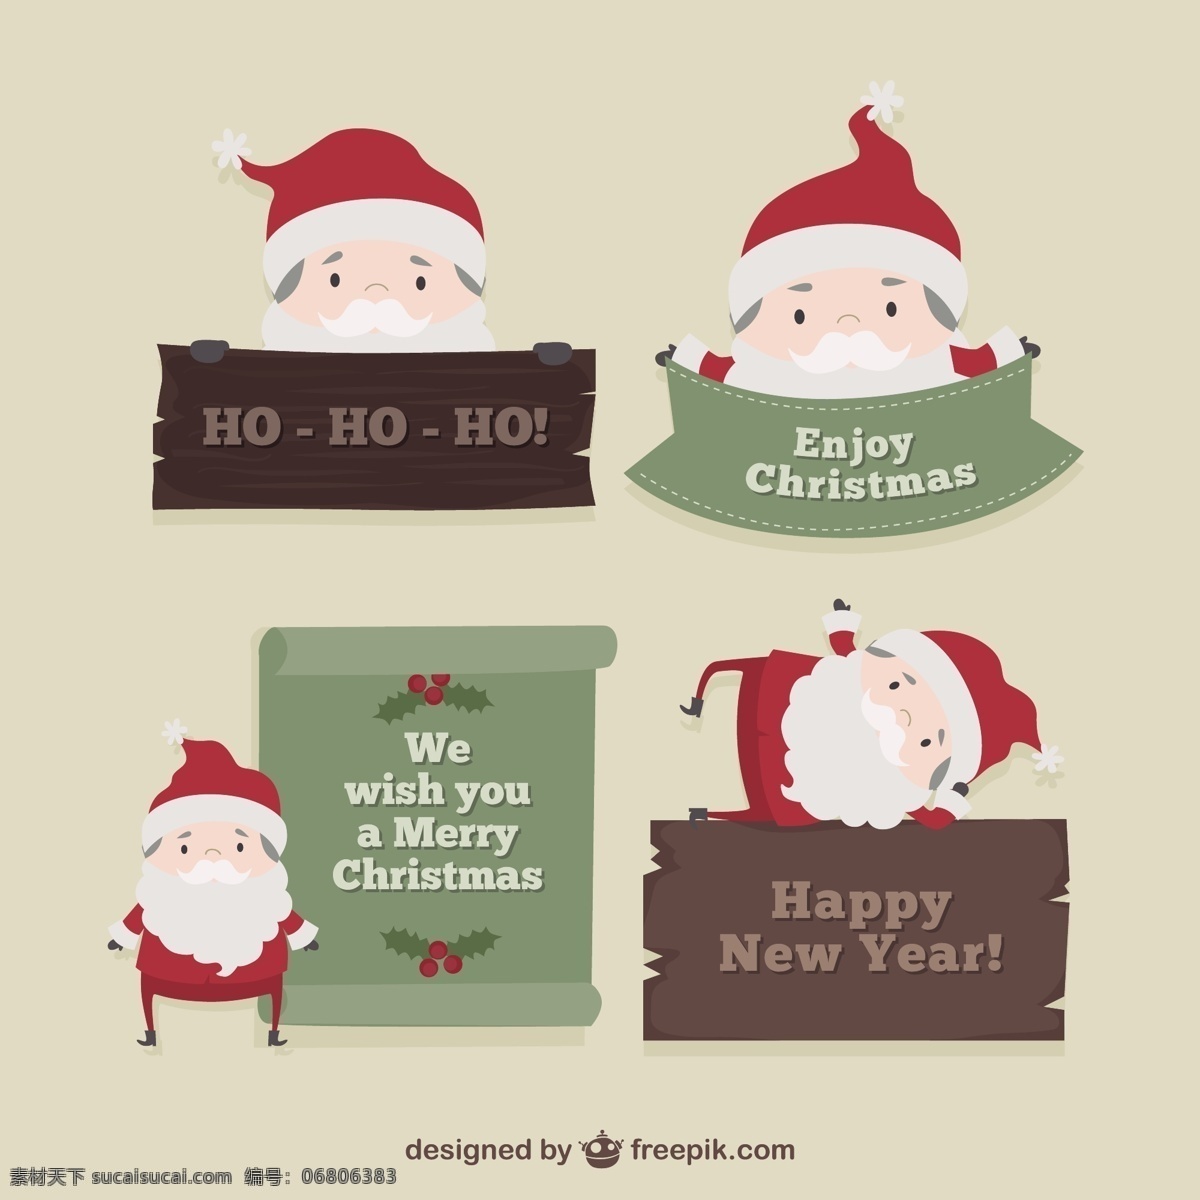 圣诞老人 克劳斯 标签 包装 旗帜 丝带 圣诞节 圣诞快乐 冬天快乐 色带 庆典 节日 丝带旗帜 节日快乐 包 季节 灰色